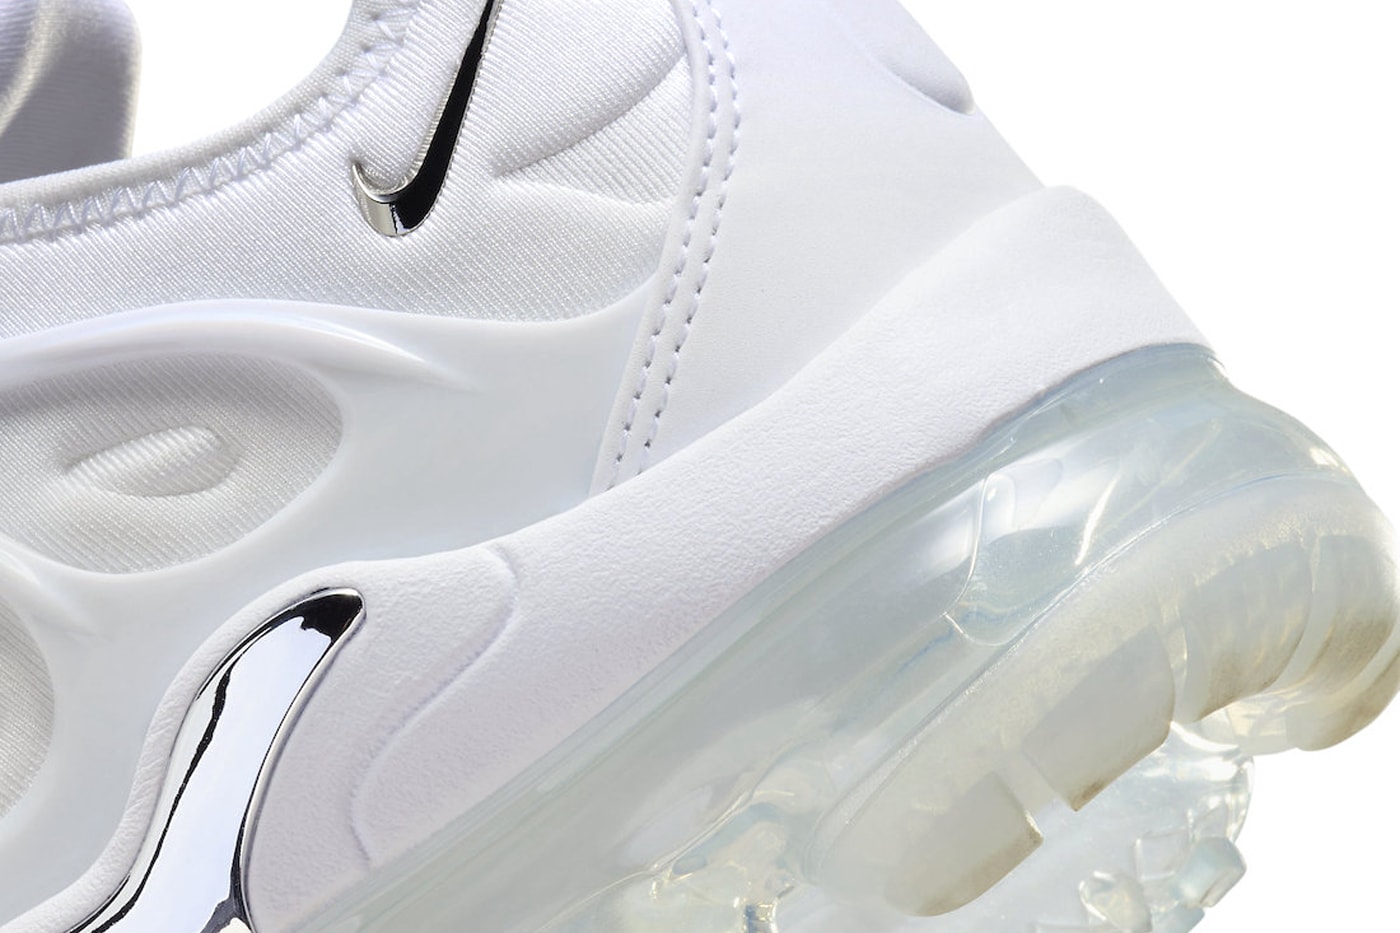 ナイキエアベイパーマックスプラスからシルバーのパーツが輝く新作 ホワイトクロームが登場 Official Look at the Nike Air VaporMax Plus "White Chrome" FQ8895-100 winter holiday 2023 air max triple white sole unit footwear sneaker